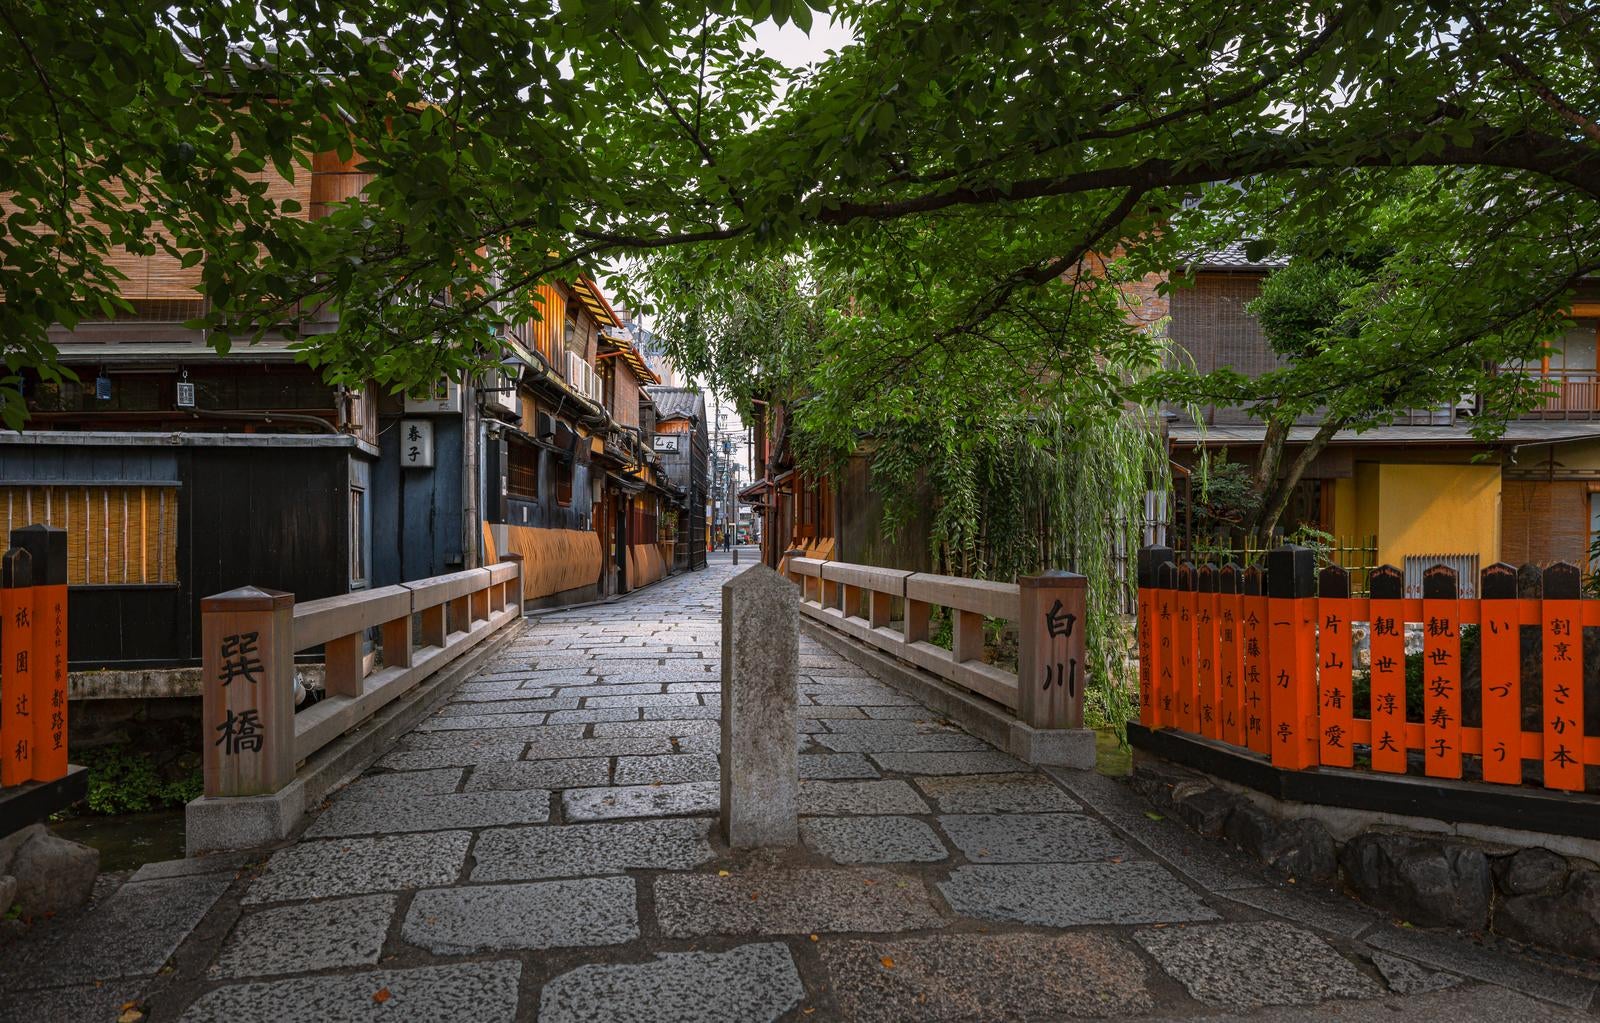 「京都祇園で巡る古橋と石畳の風情」の写真